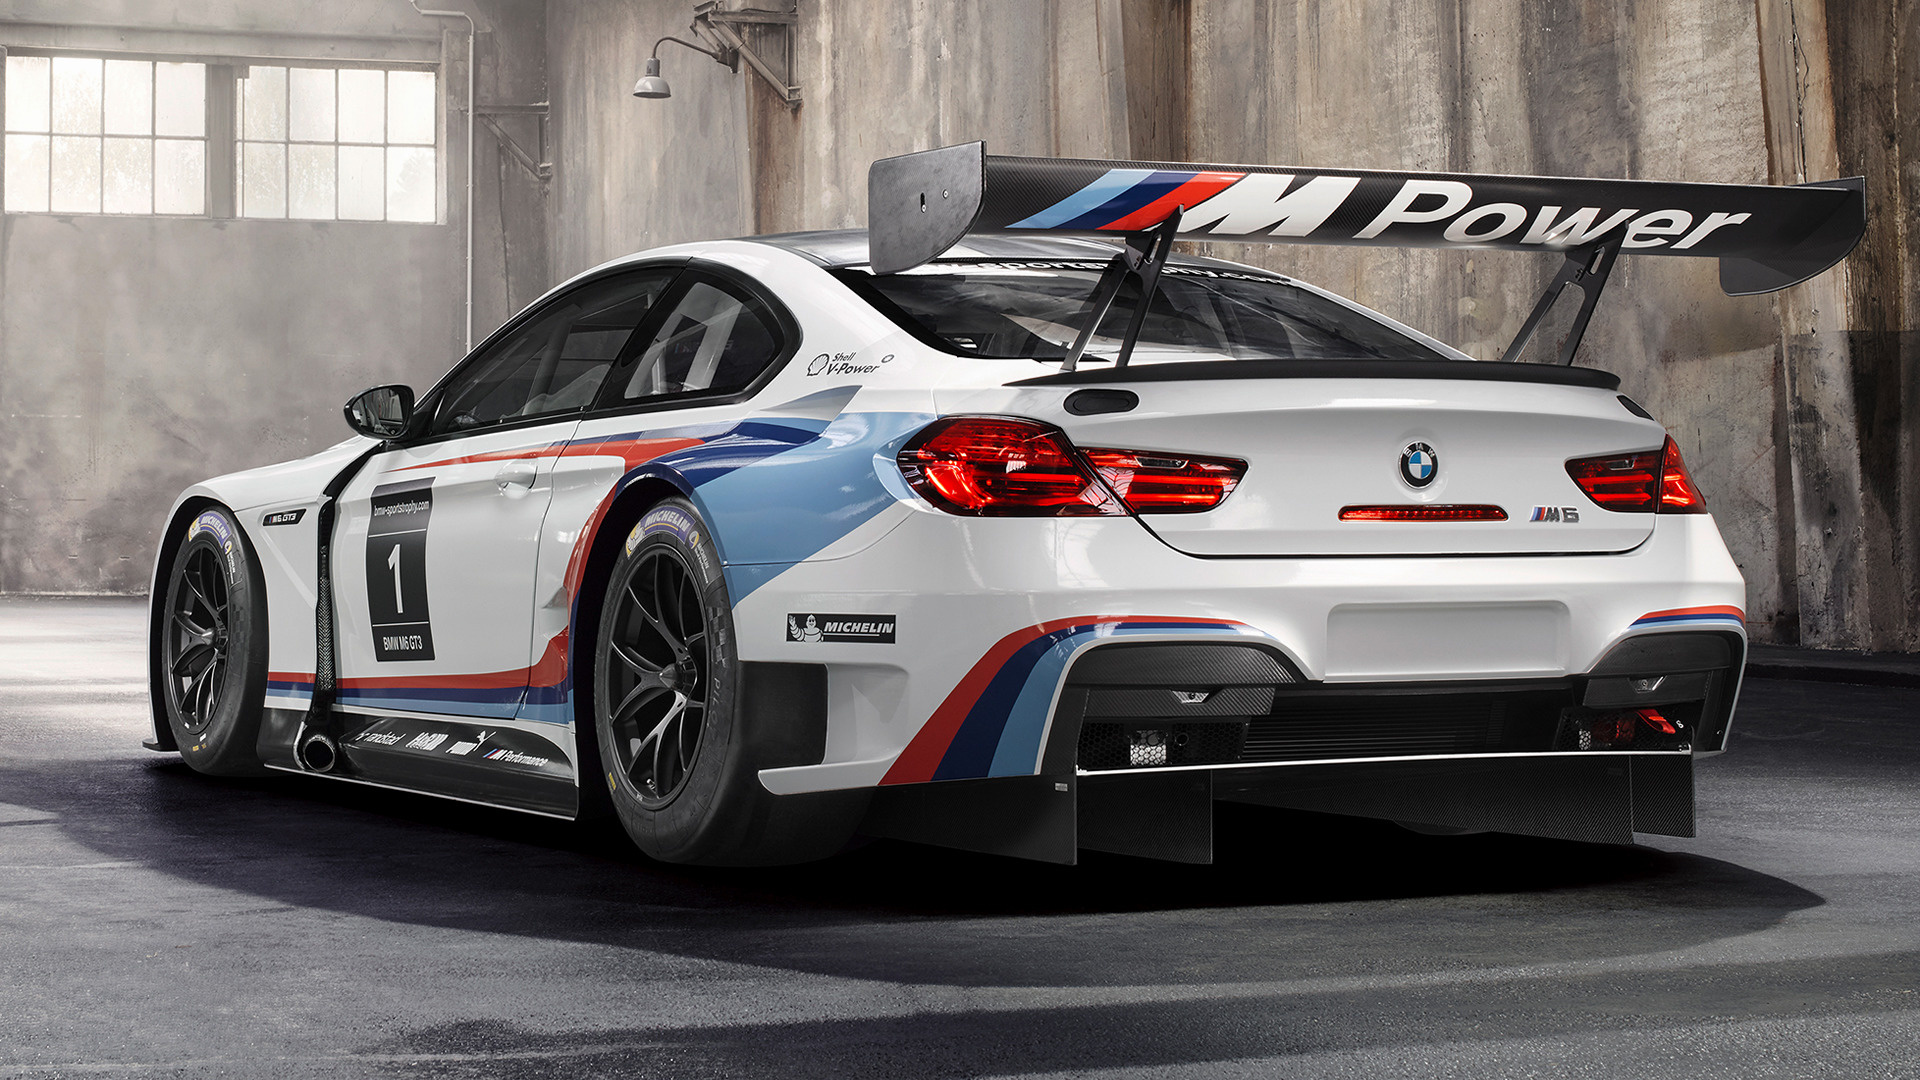 Vergleiche über 149 bmw m8 gebrauchtwagen angebote im netz und finde so dein neues auto! 2015 BMW M6 GT3 - Wallpapers and HD Images | Car Pixel